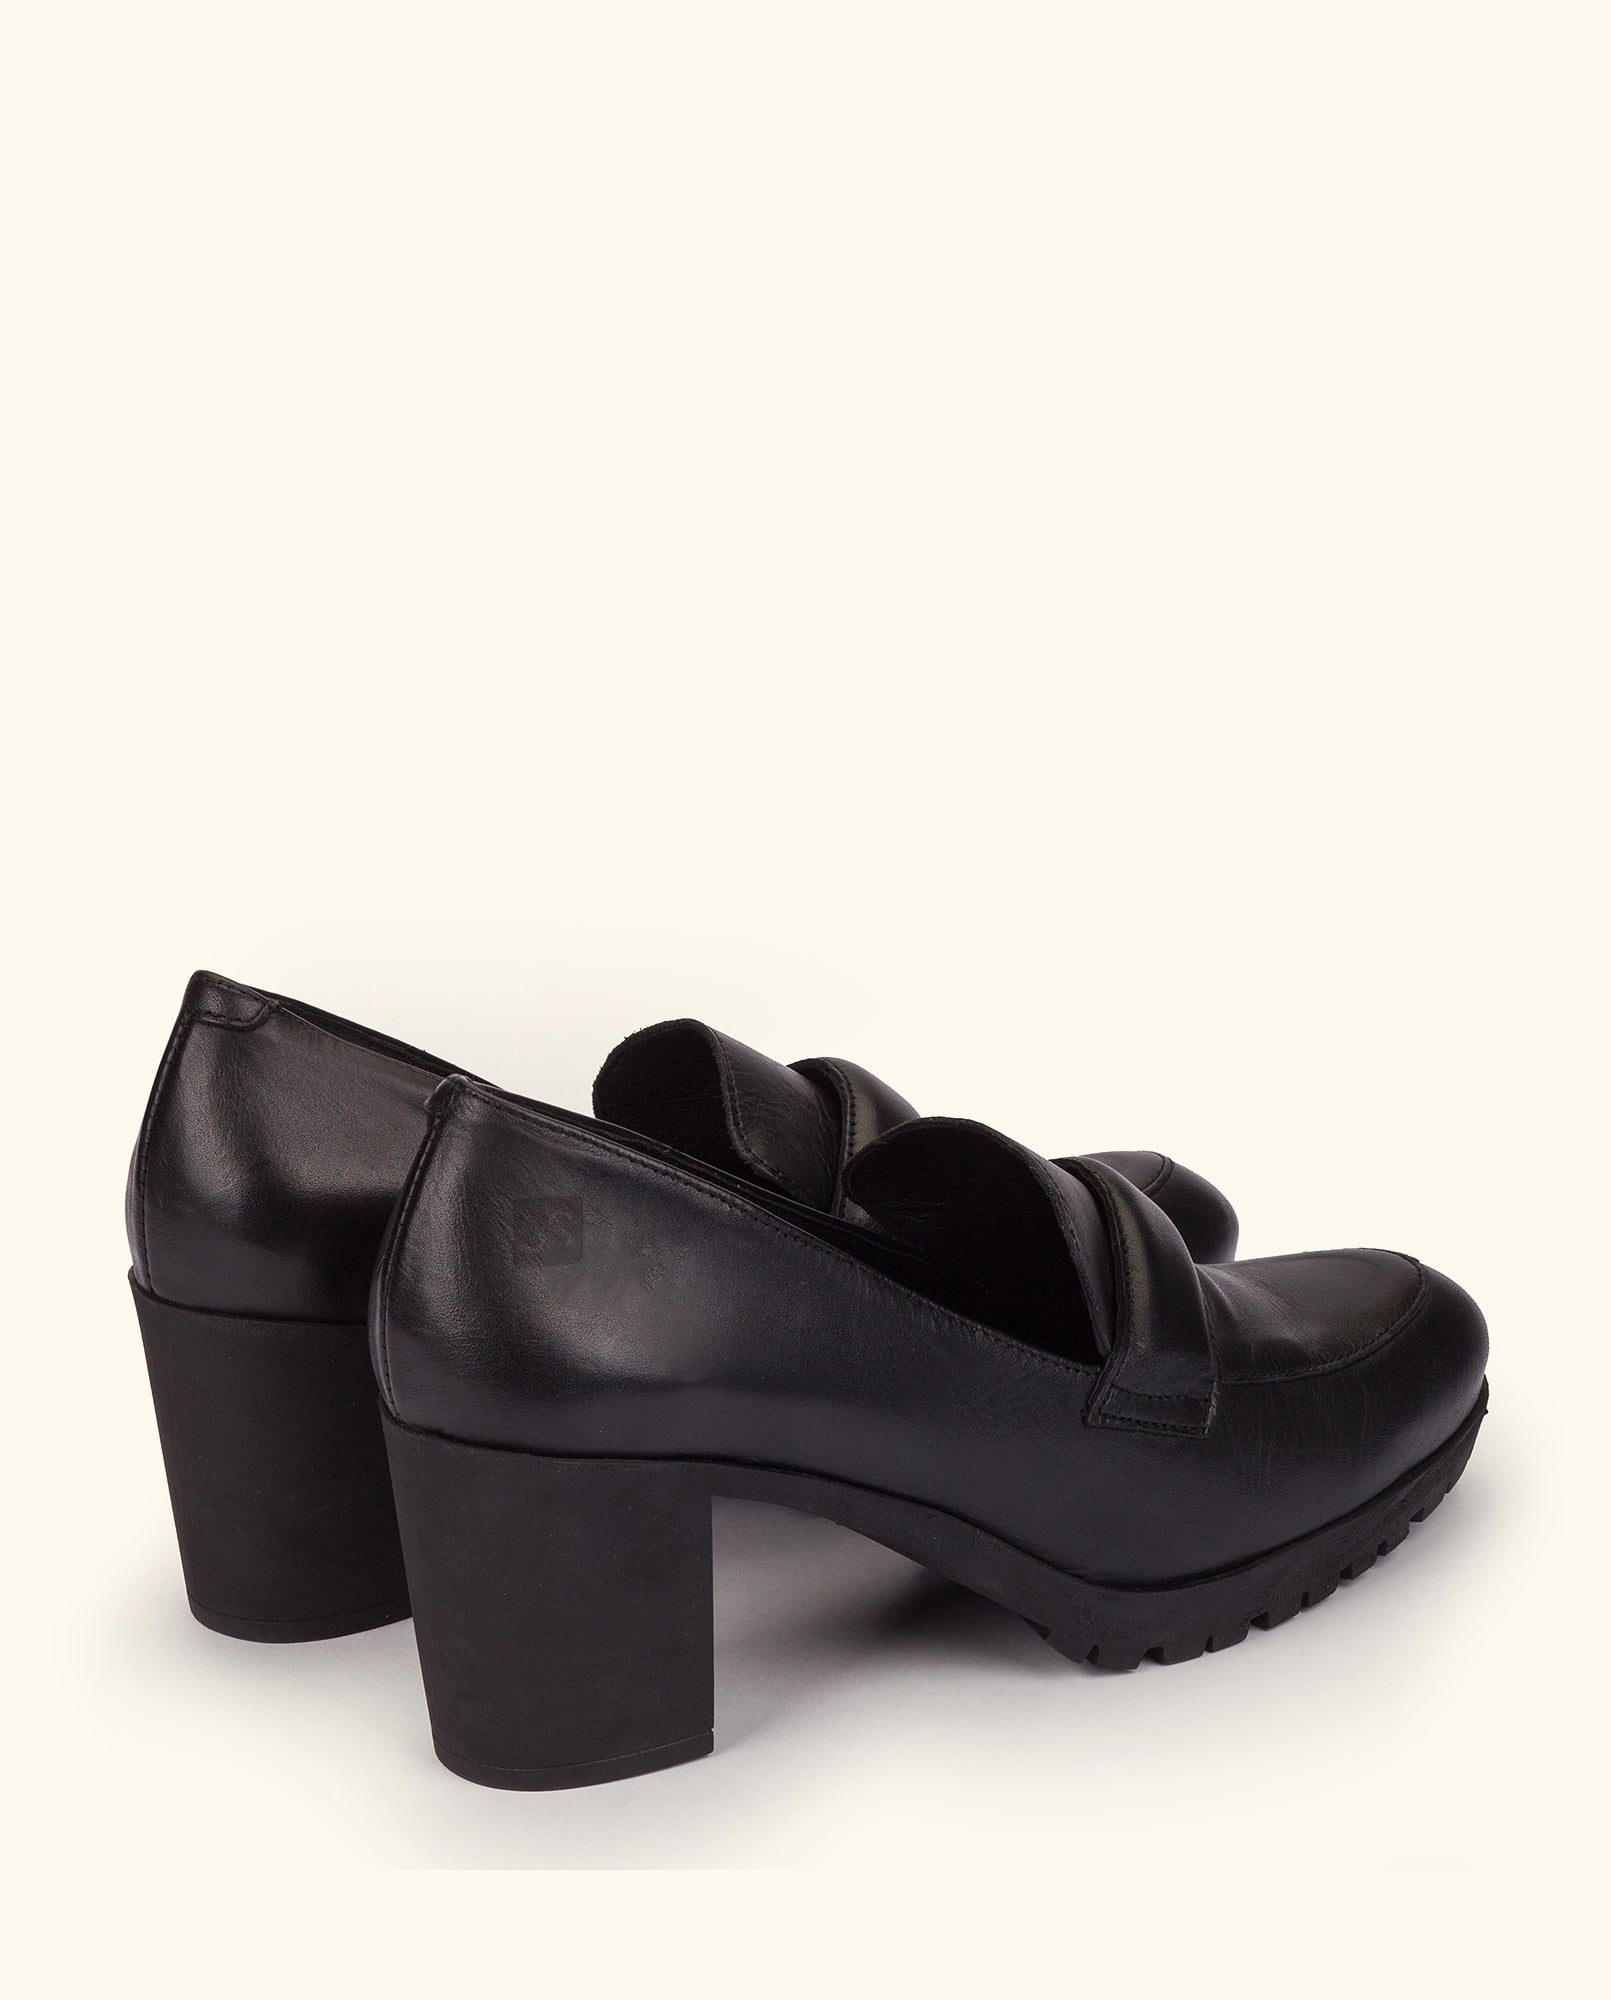 Heeled shoe PRAGA-013 black